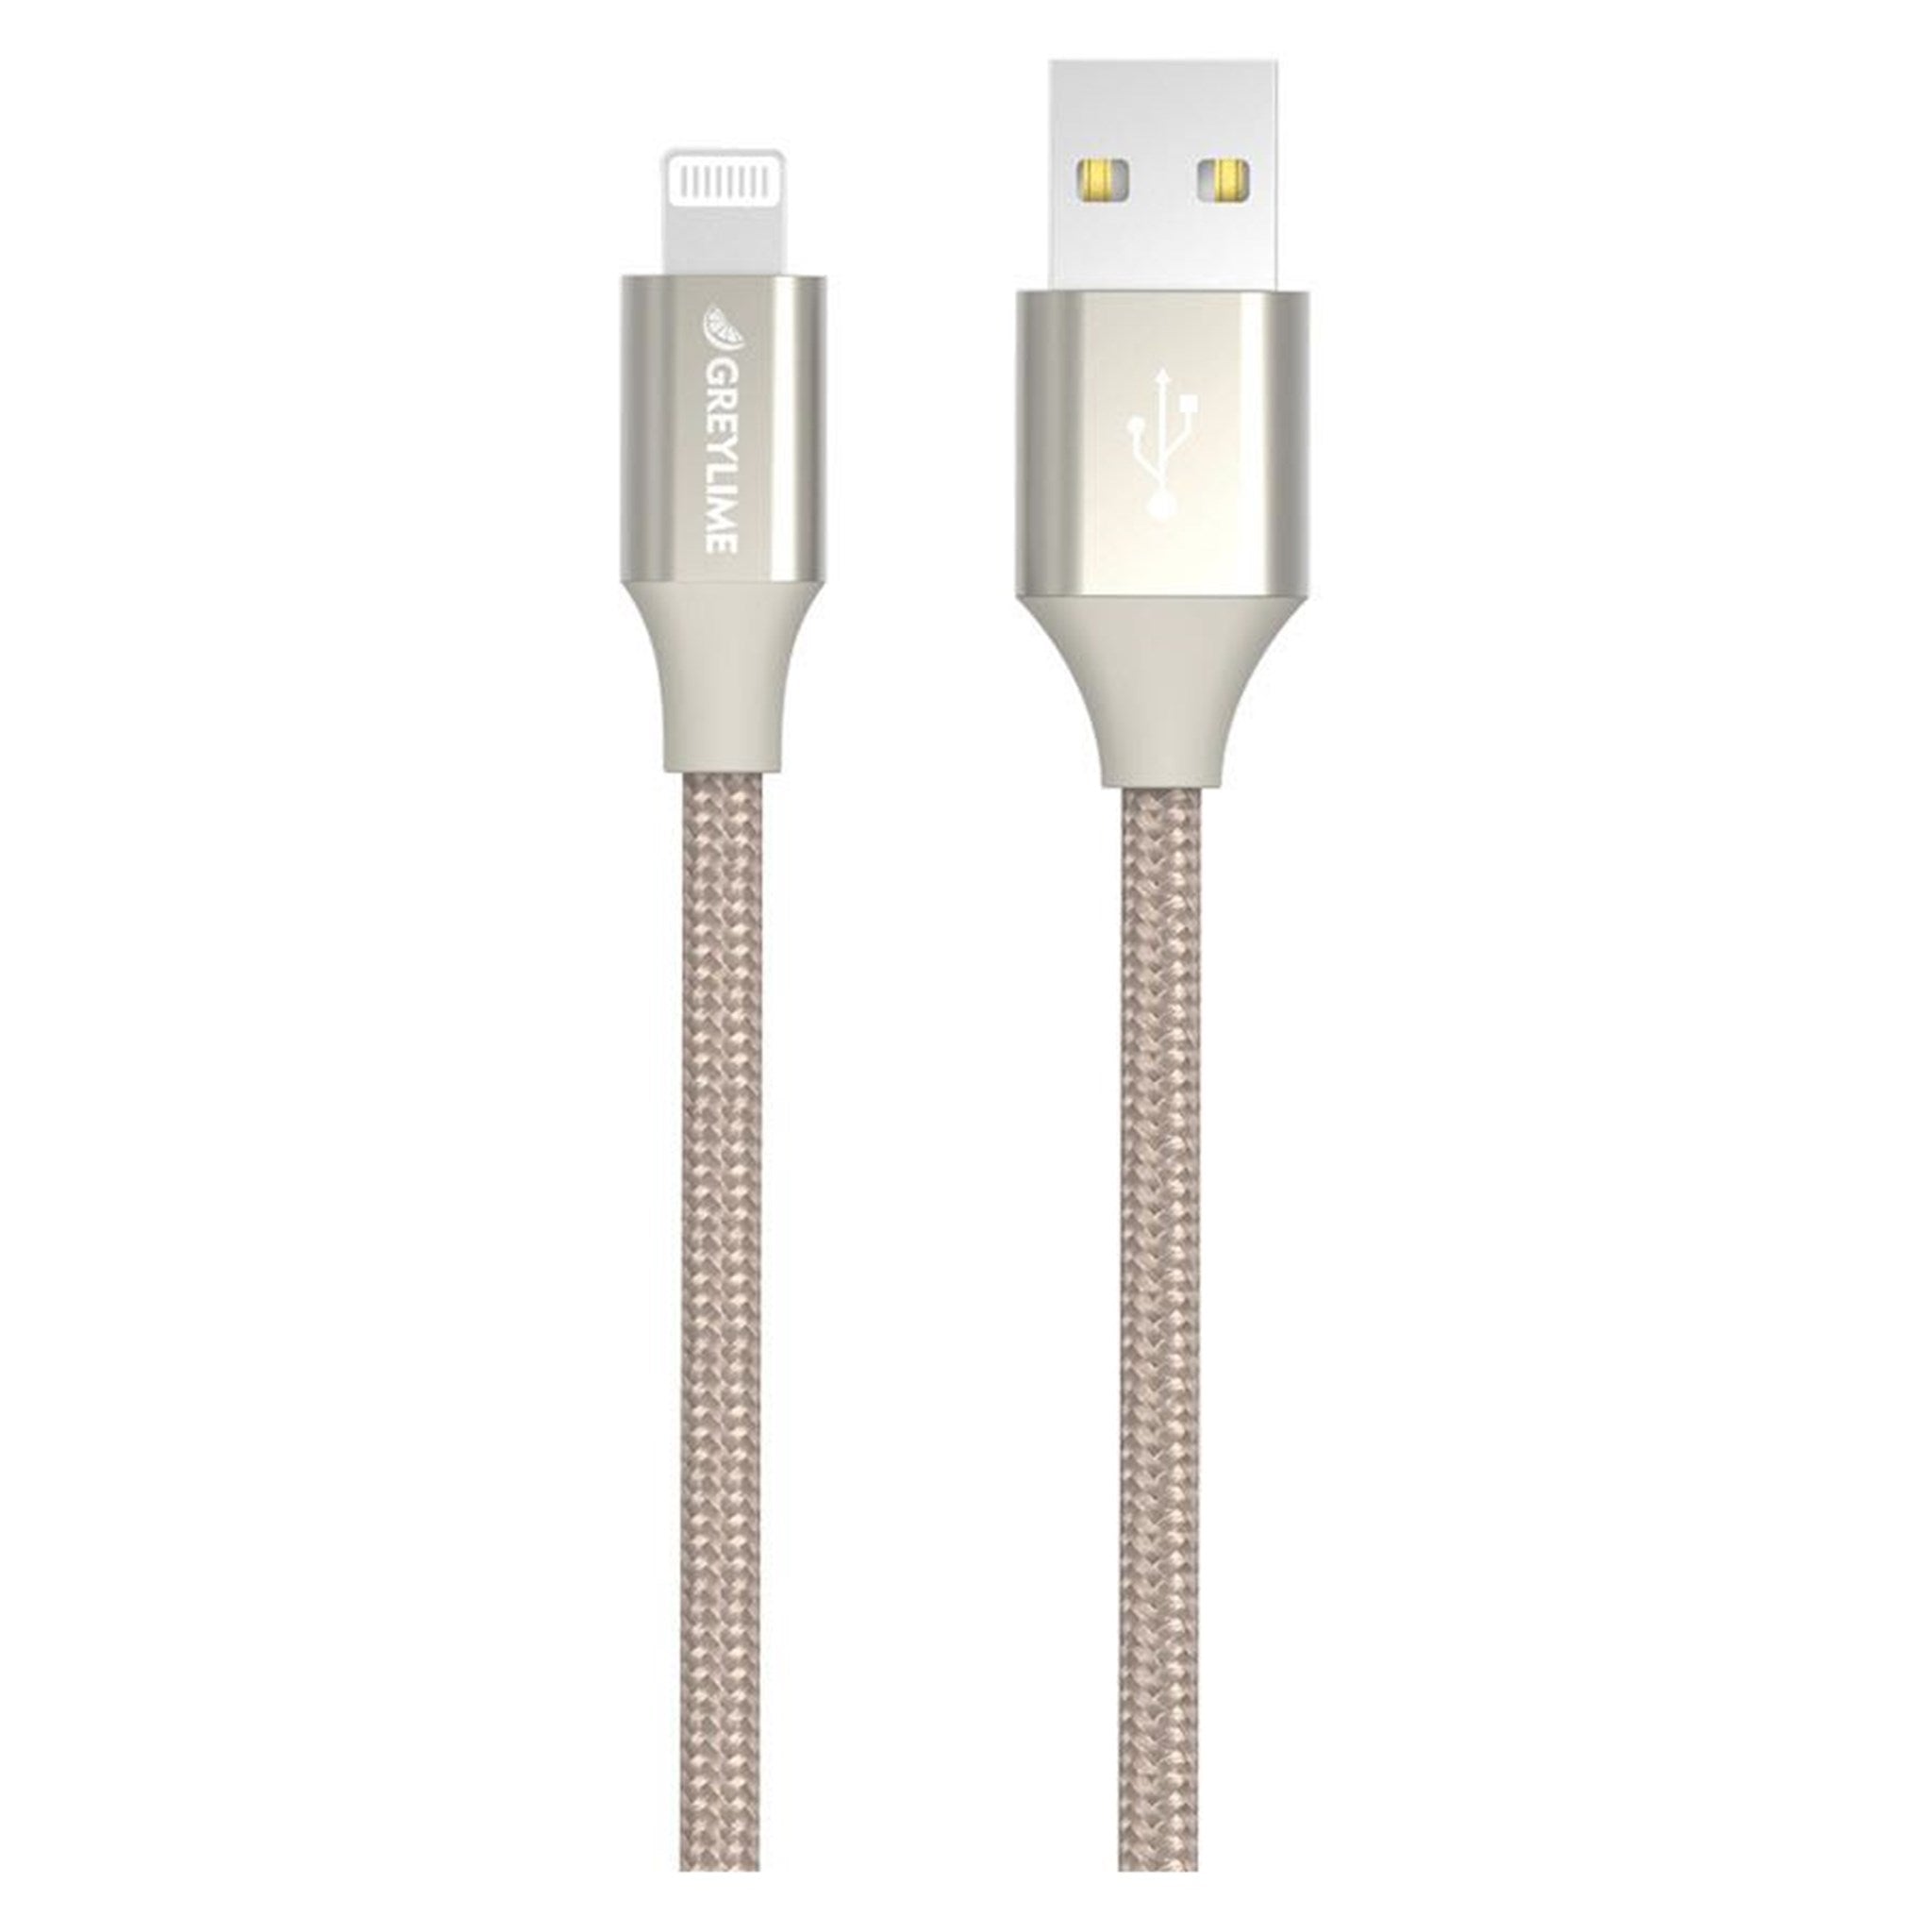 Billede af GreyLime Braided USB-A til MFi Lightning Kabel Beige 1 m hos Balar